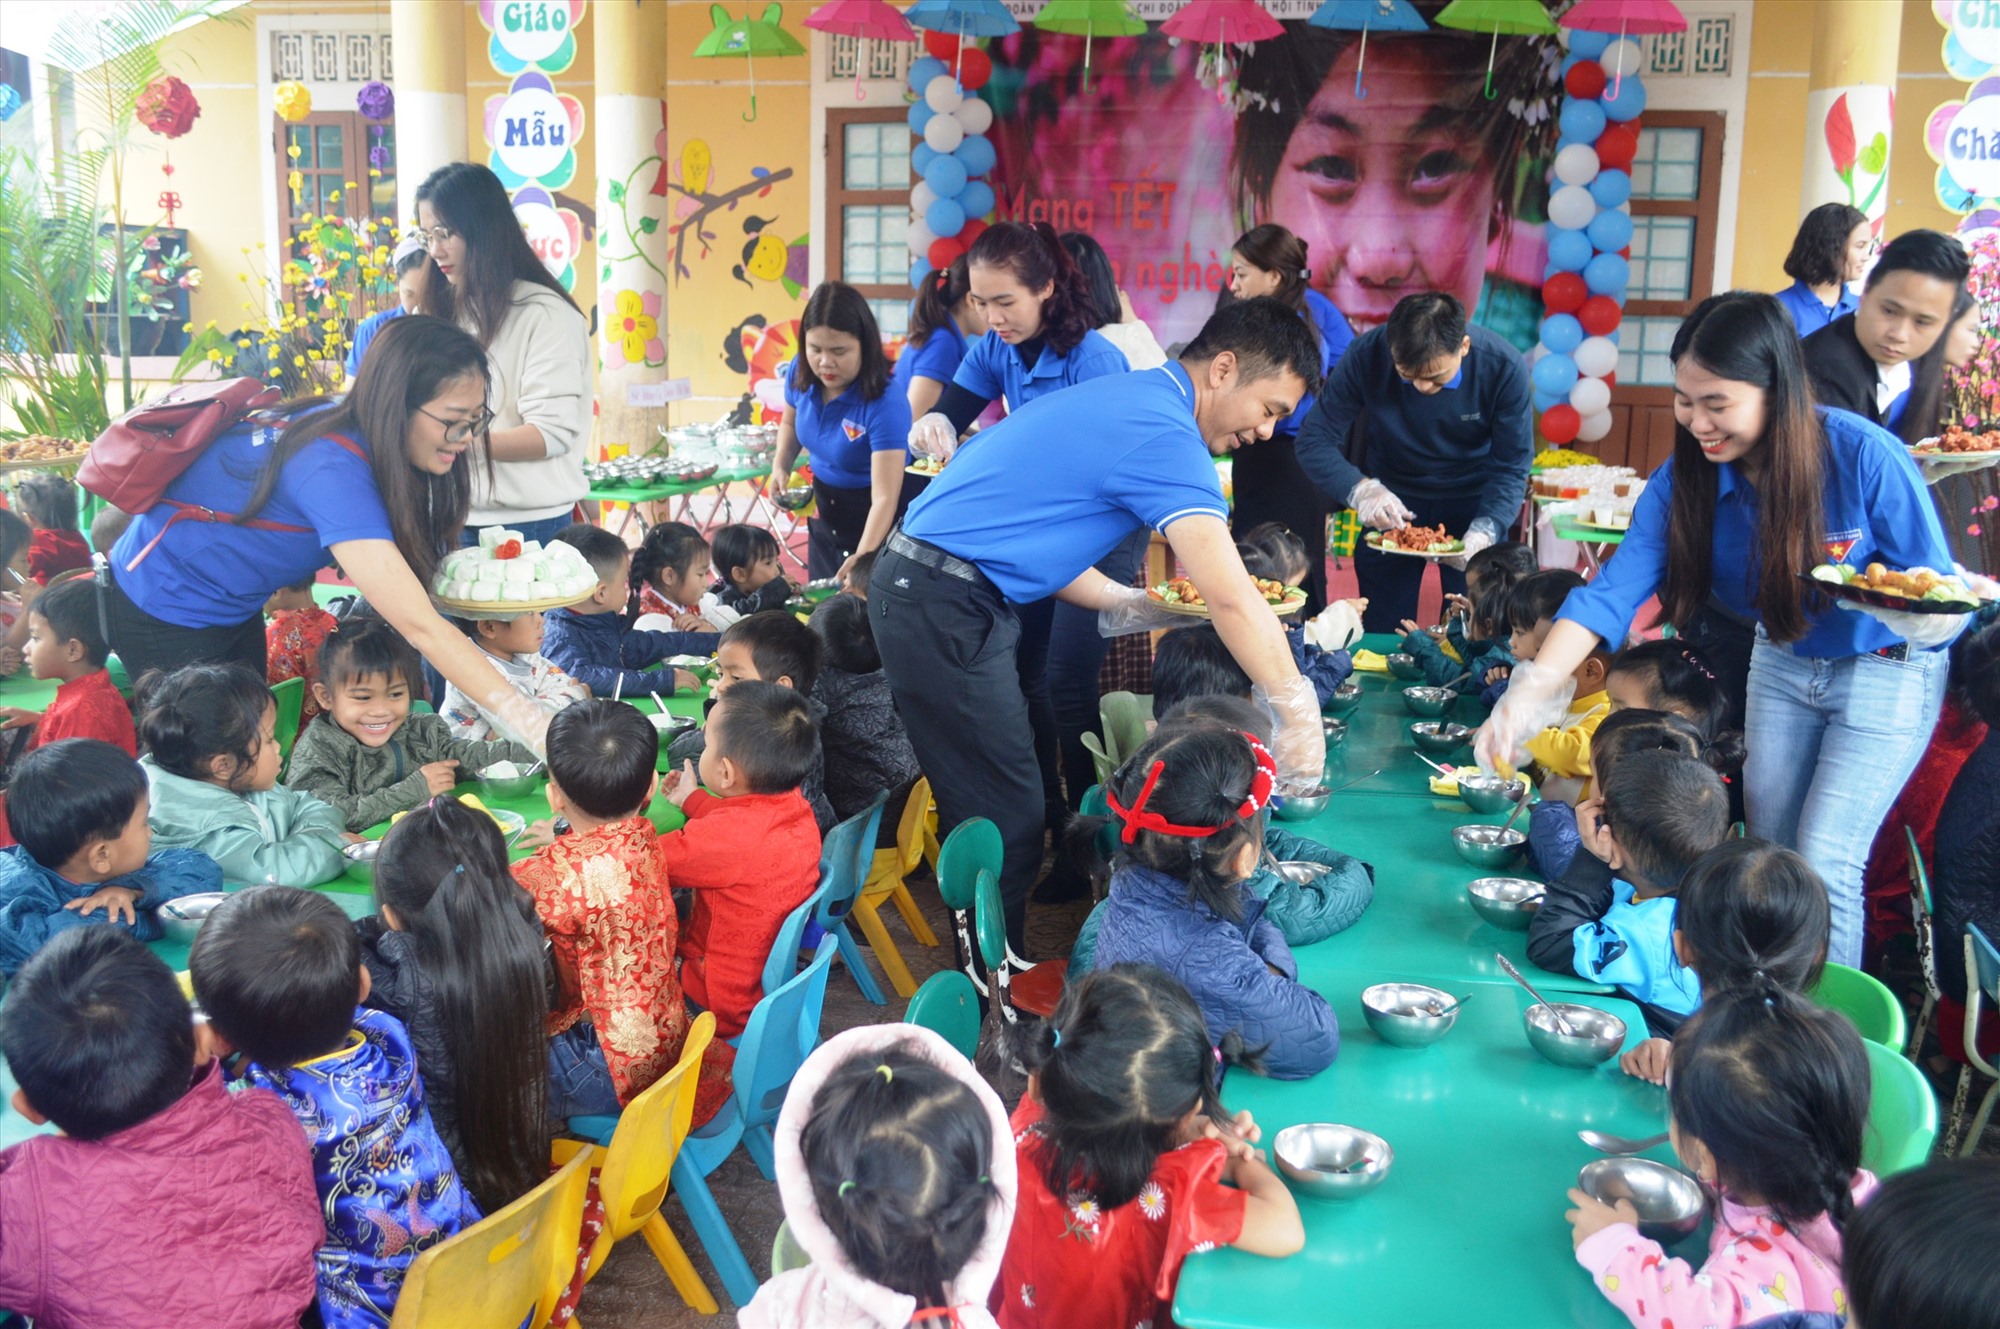 Tiệc buffet đã giúp các em học sinh có bữa ăn giàu dinh dưỡng trong không khí vui vẻ, ấm áp những ngày đầu năm mới - Ảnh: ĐV